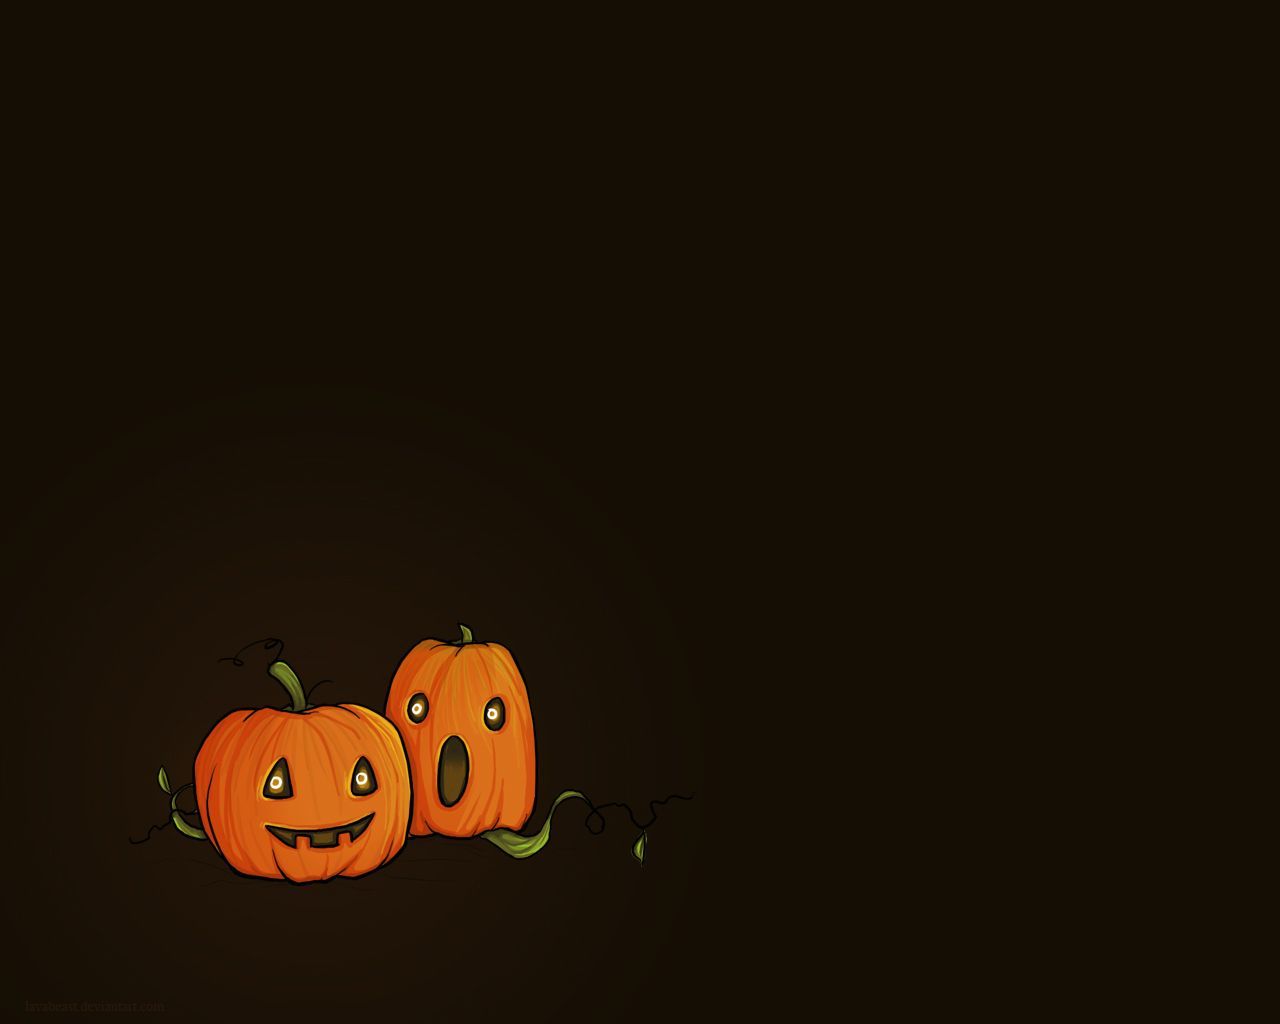 Cute Halloween Desktop Wallpaper. Pumpkin wallpaper, Halloween desktop wallpaper, Halloween wallpaper iphone